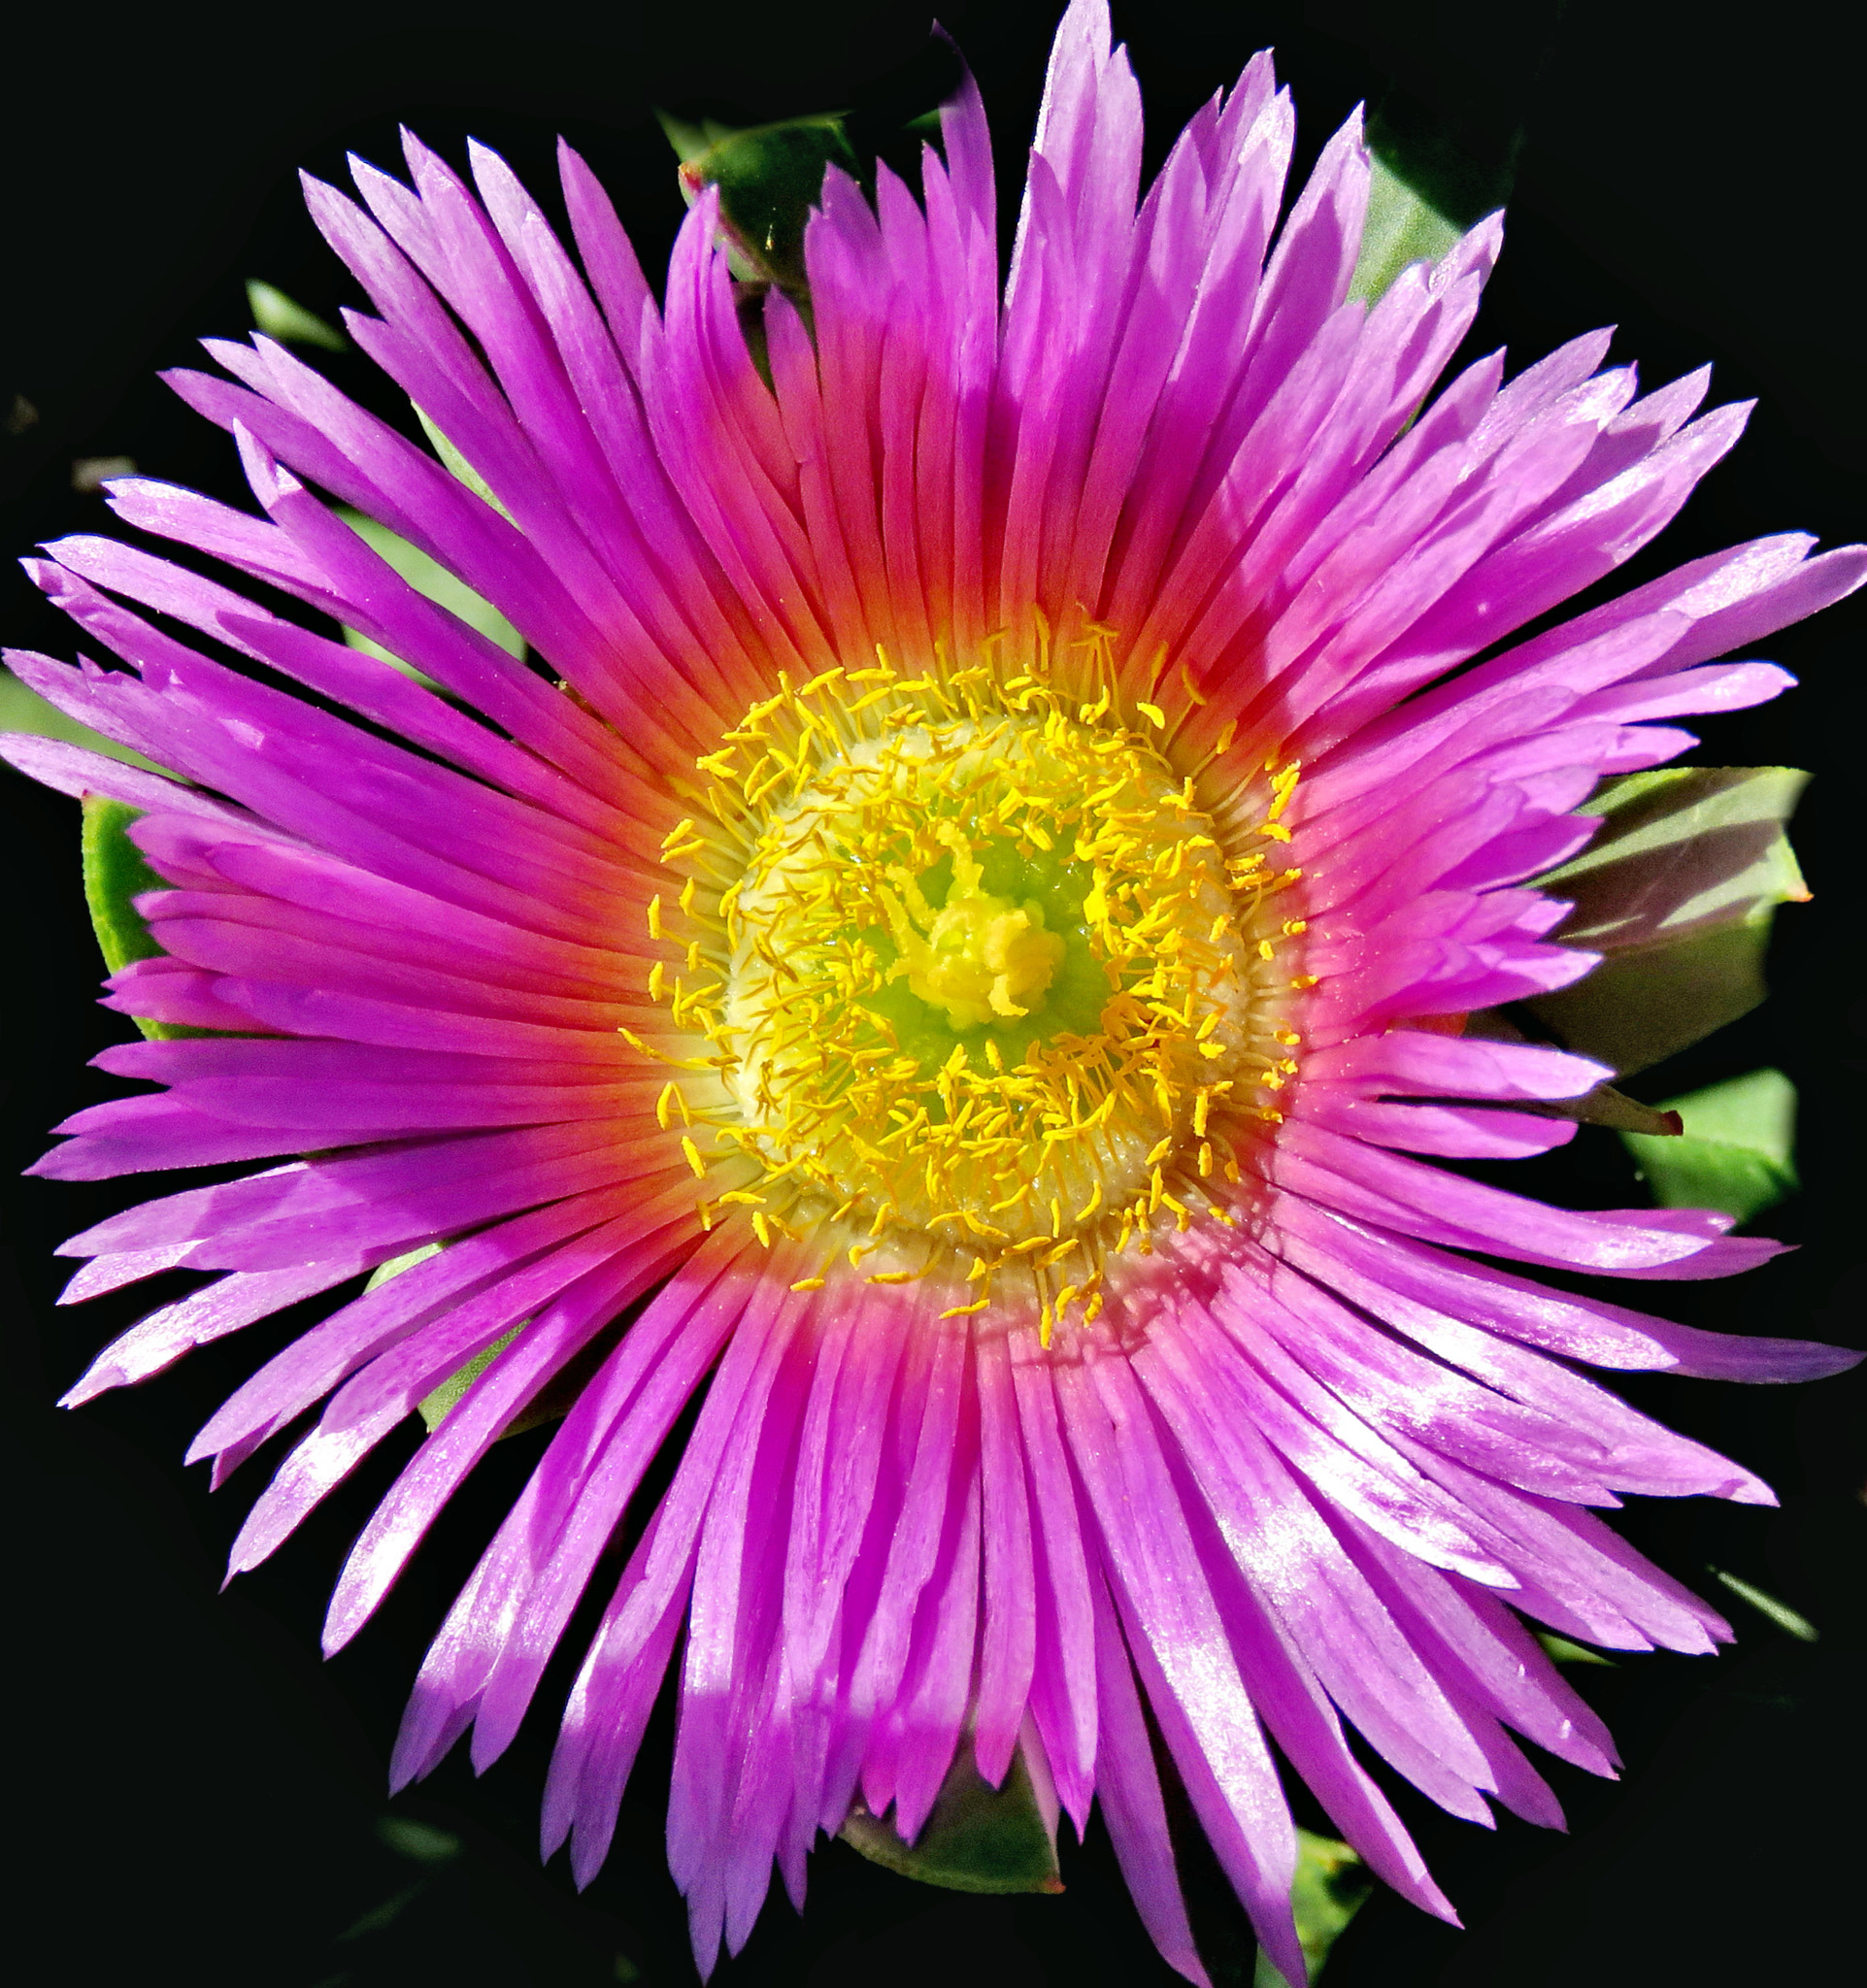 Canon PowerShot SX60 HS sample photo. A purple dandelion flower photography